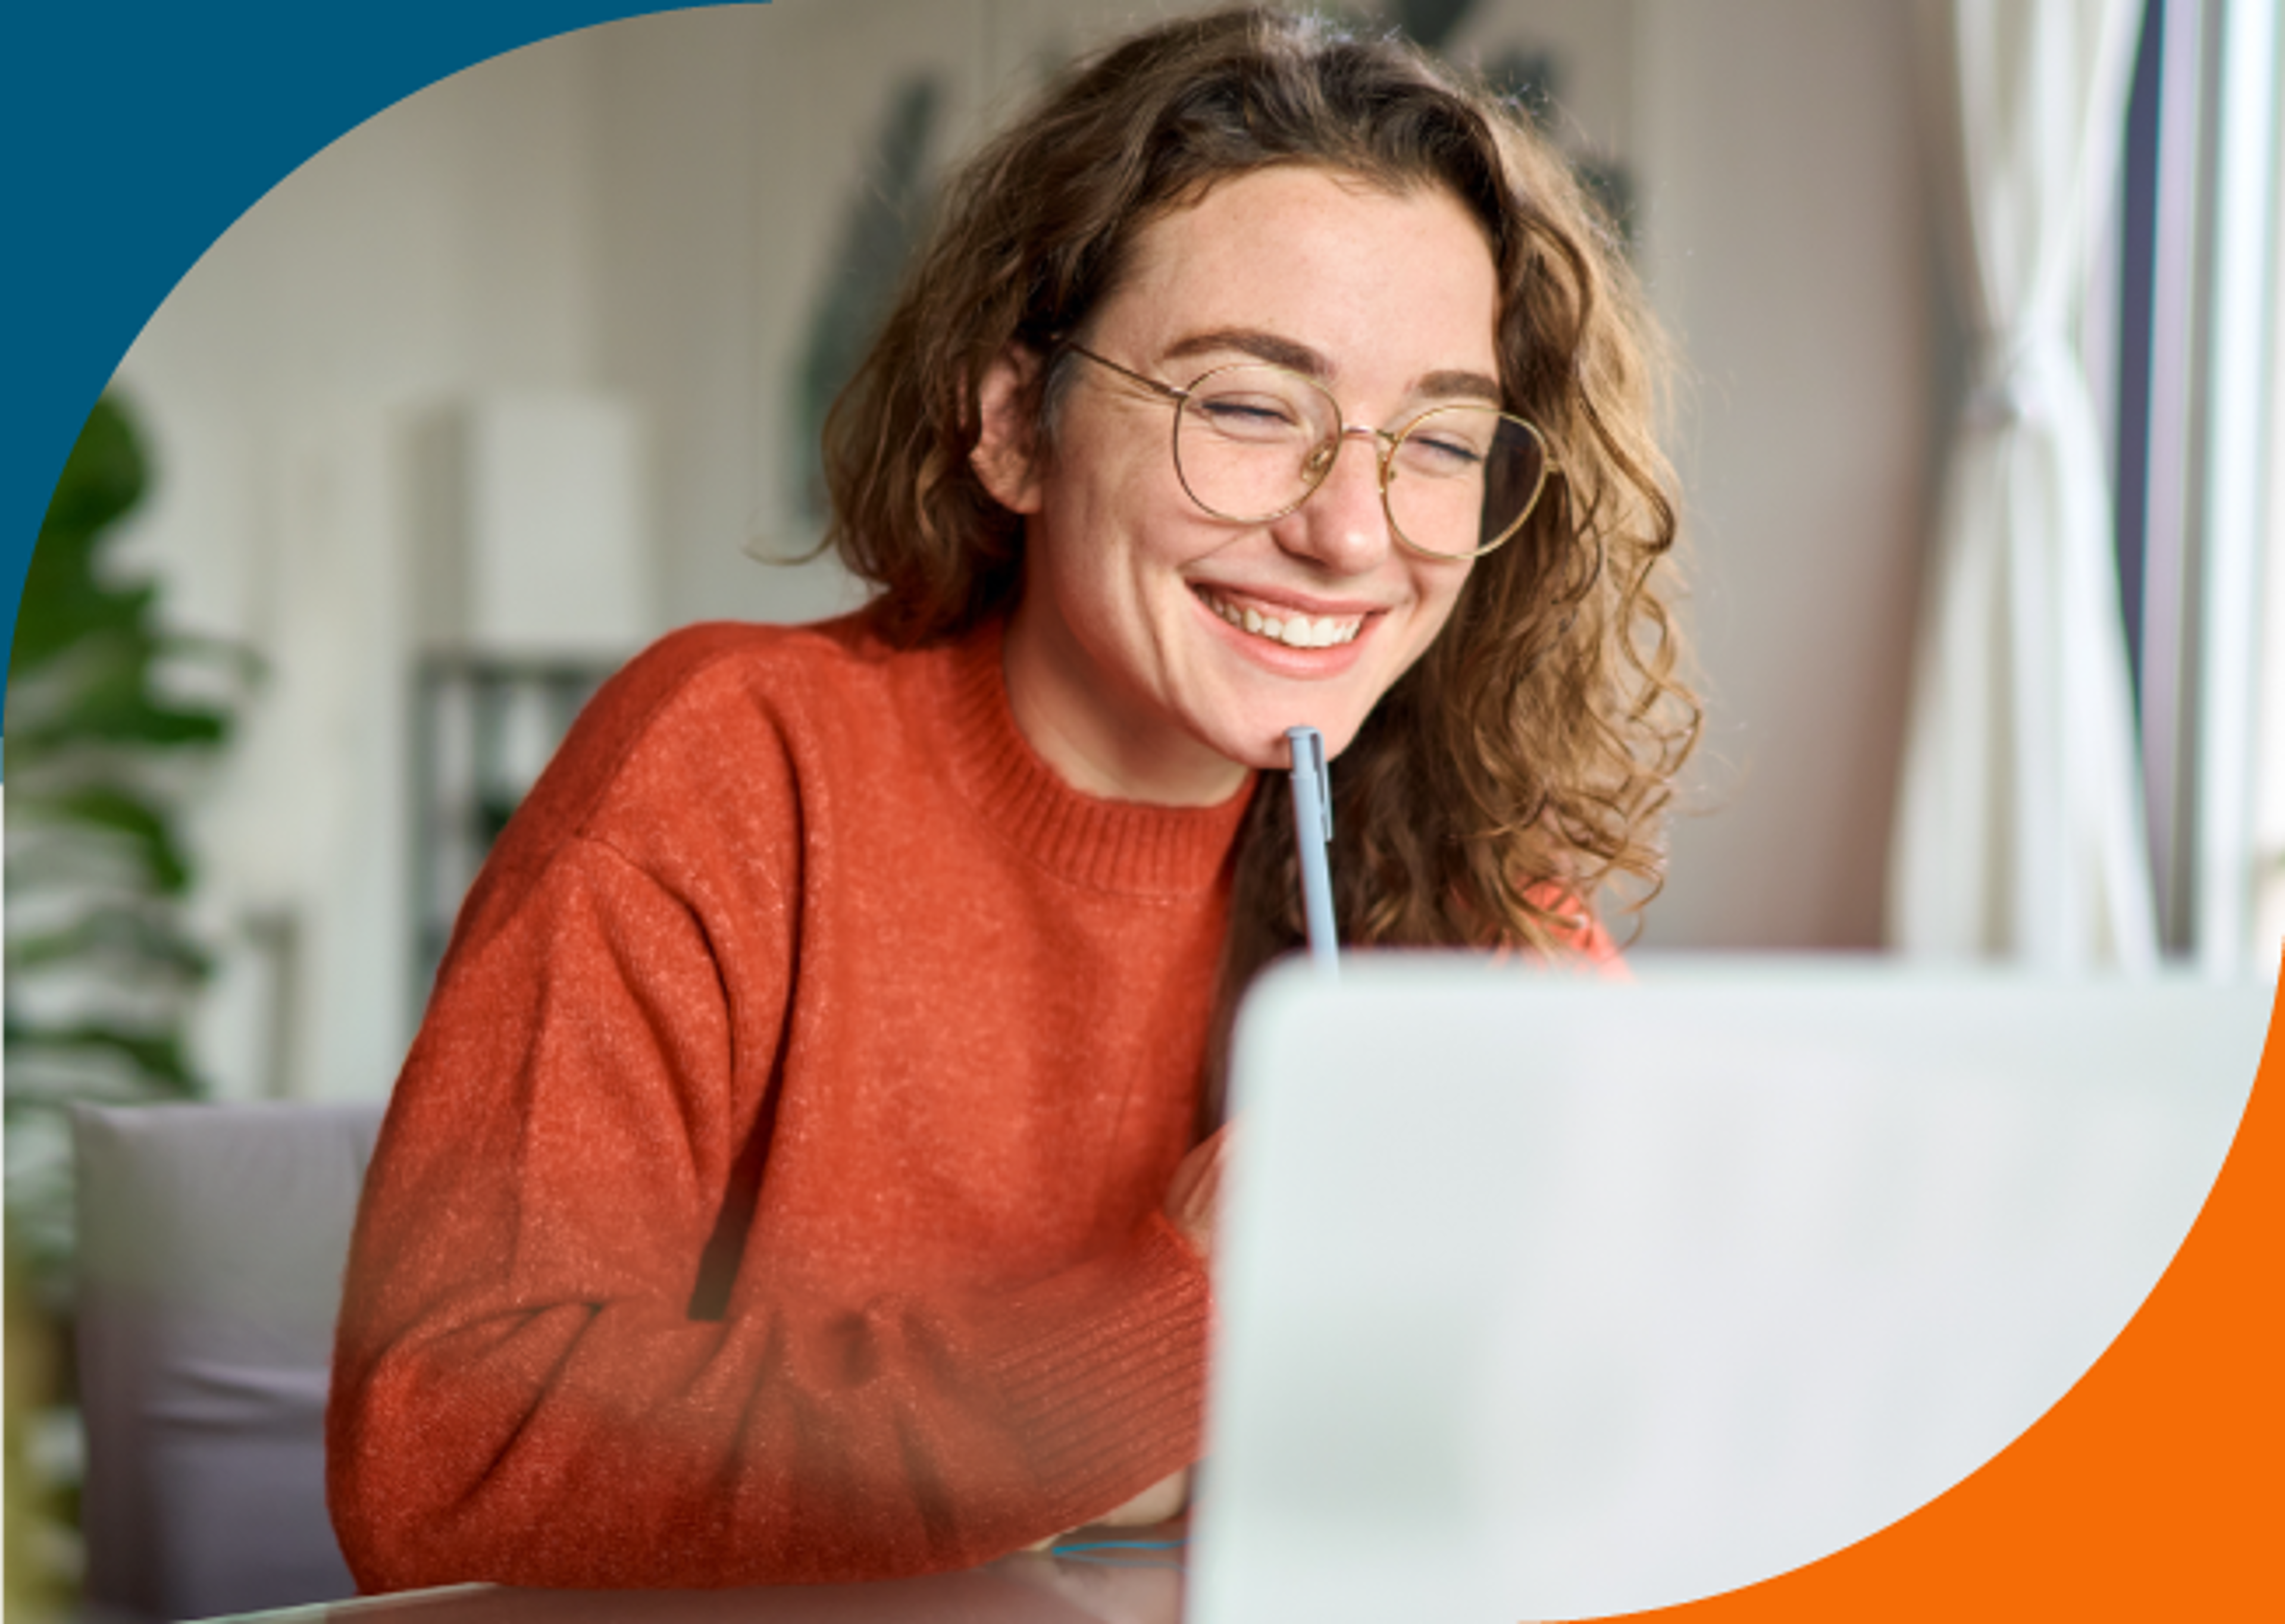 Una mujer alegre con gafas trabajando en su computadora portátil, mostrando compromiso y una sonrisa agradable.